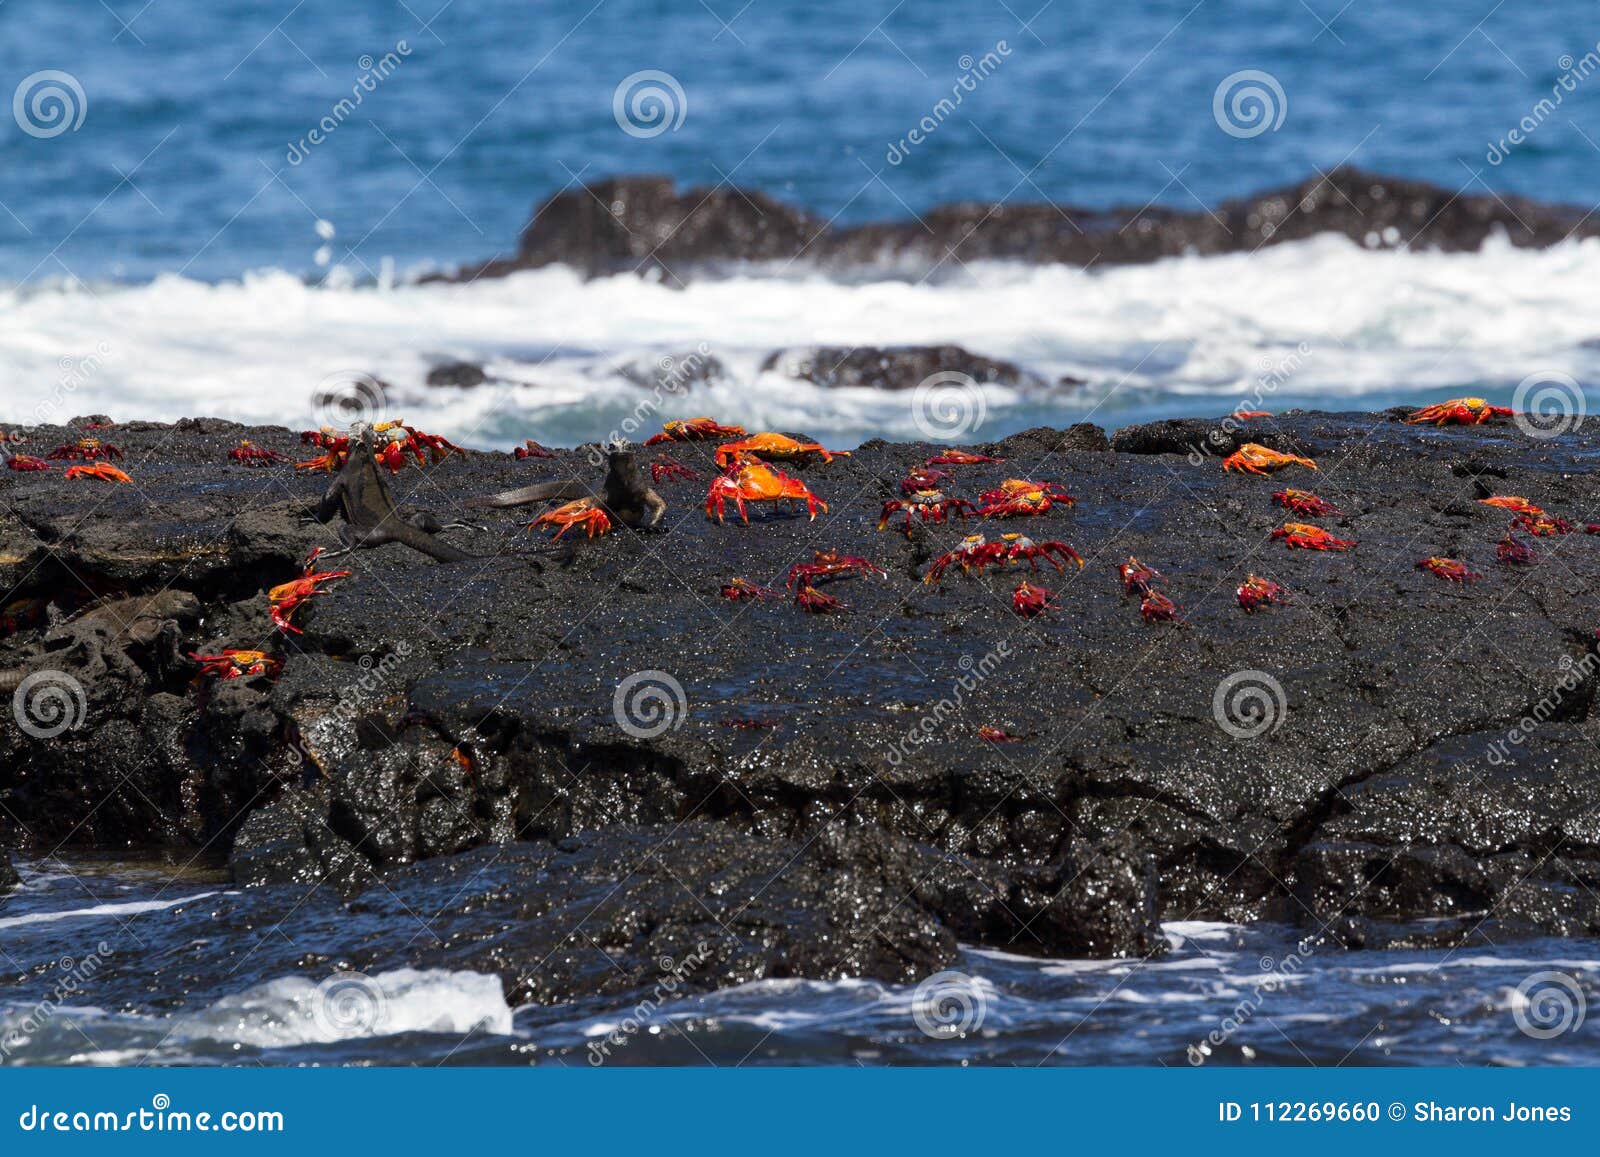 sally lightfoot crabs grapsus grapsus on a lava rock, galapagos